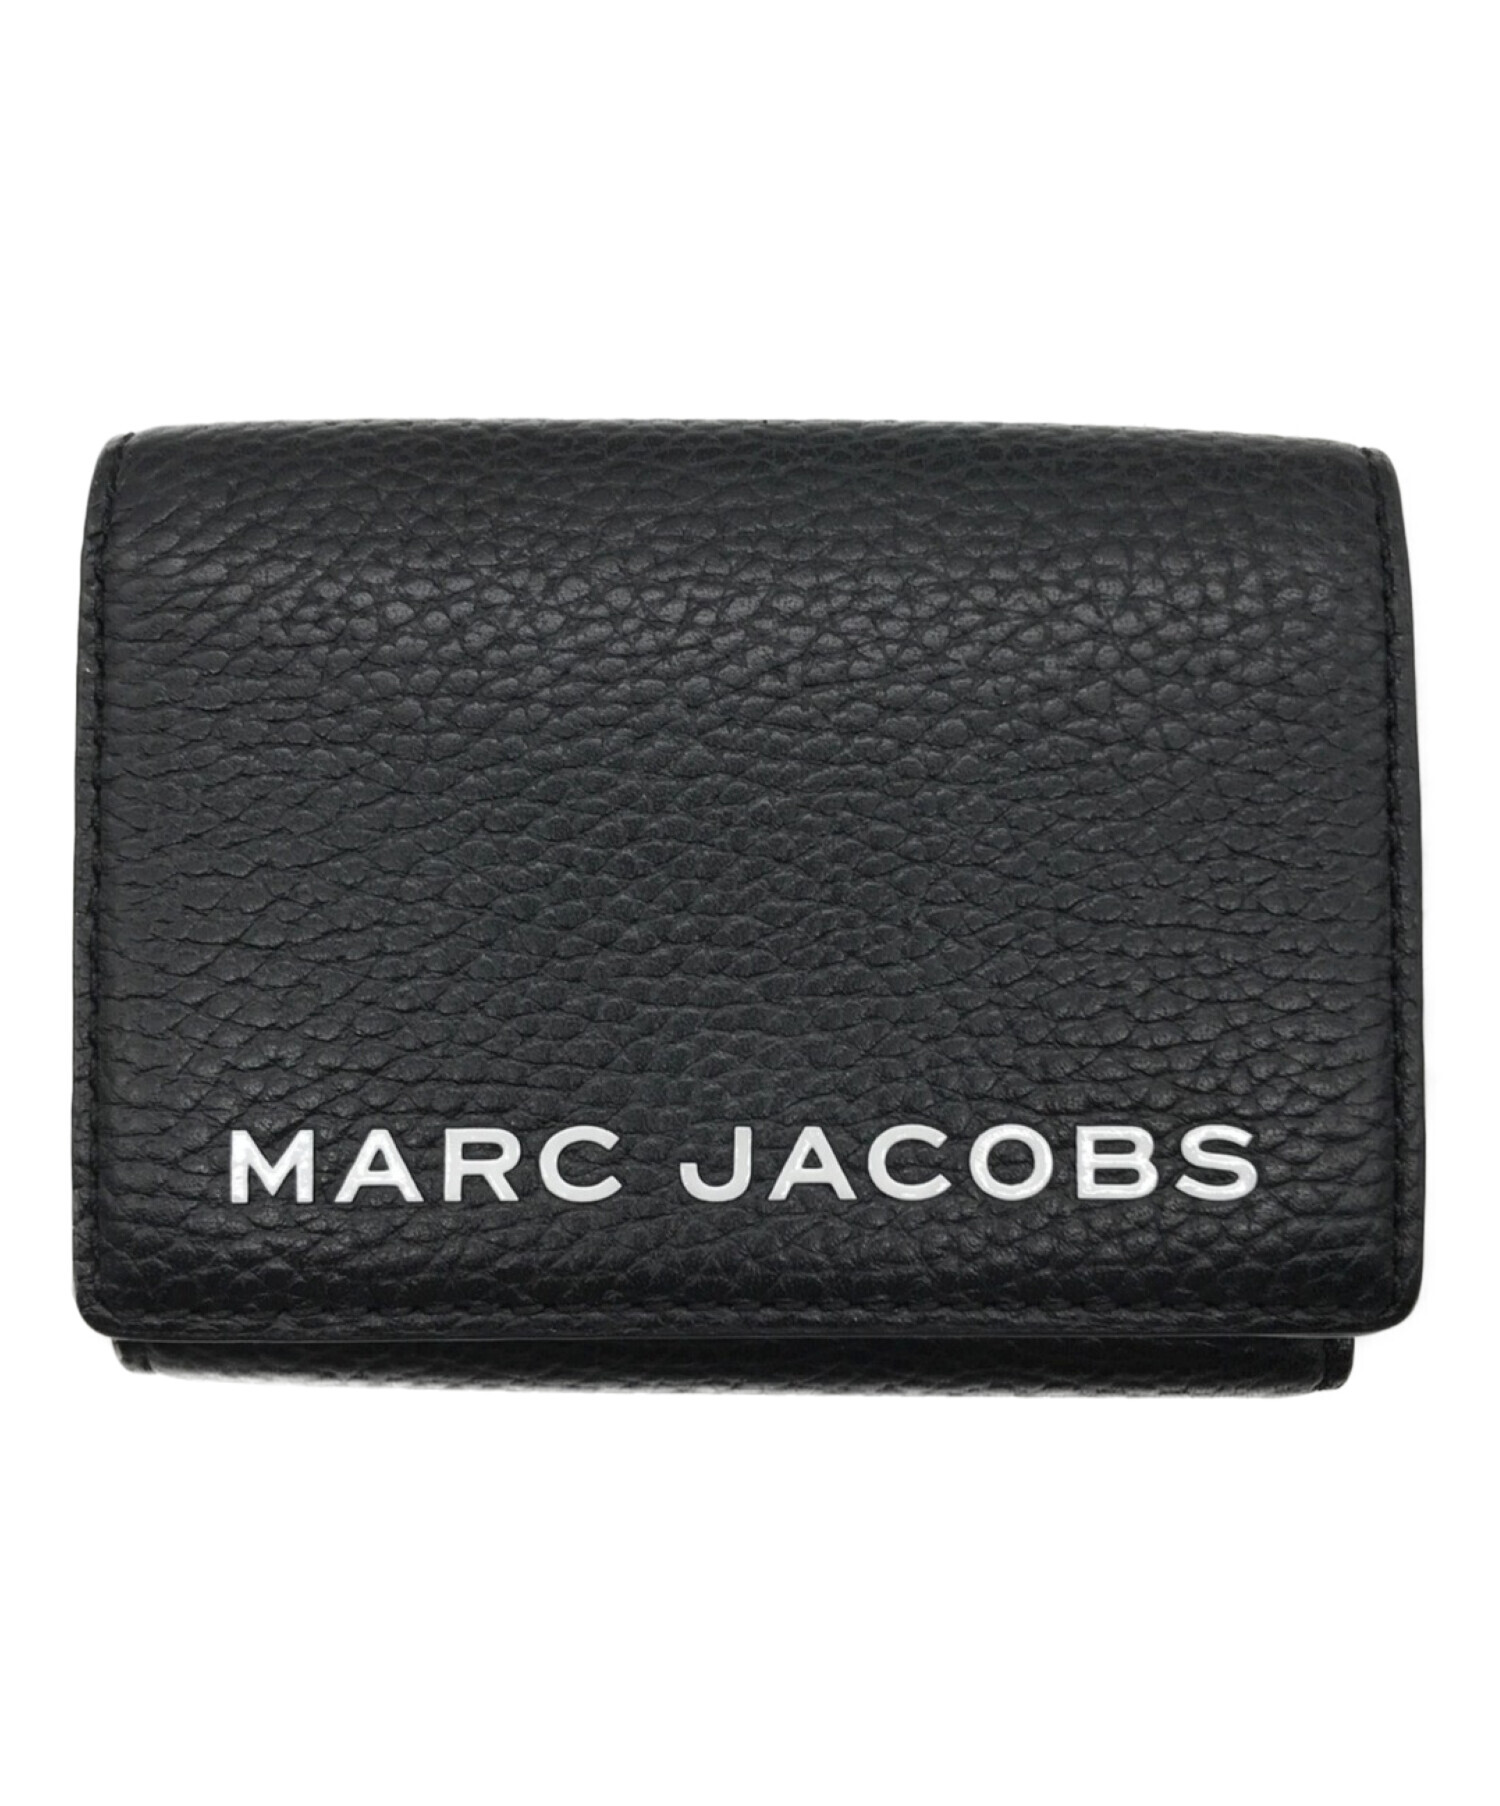 専用未使用タグ付 マークジェイコブス MARC JACOBS 財布 三つ折り財布